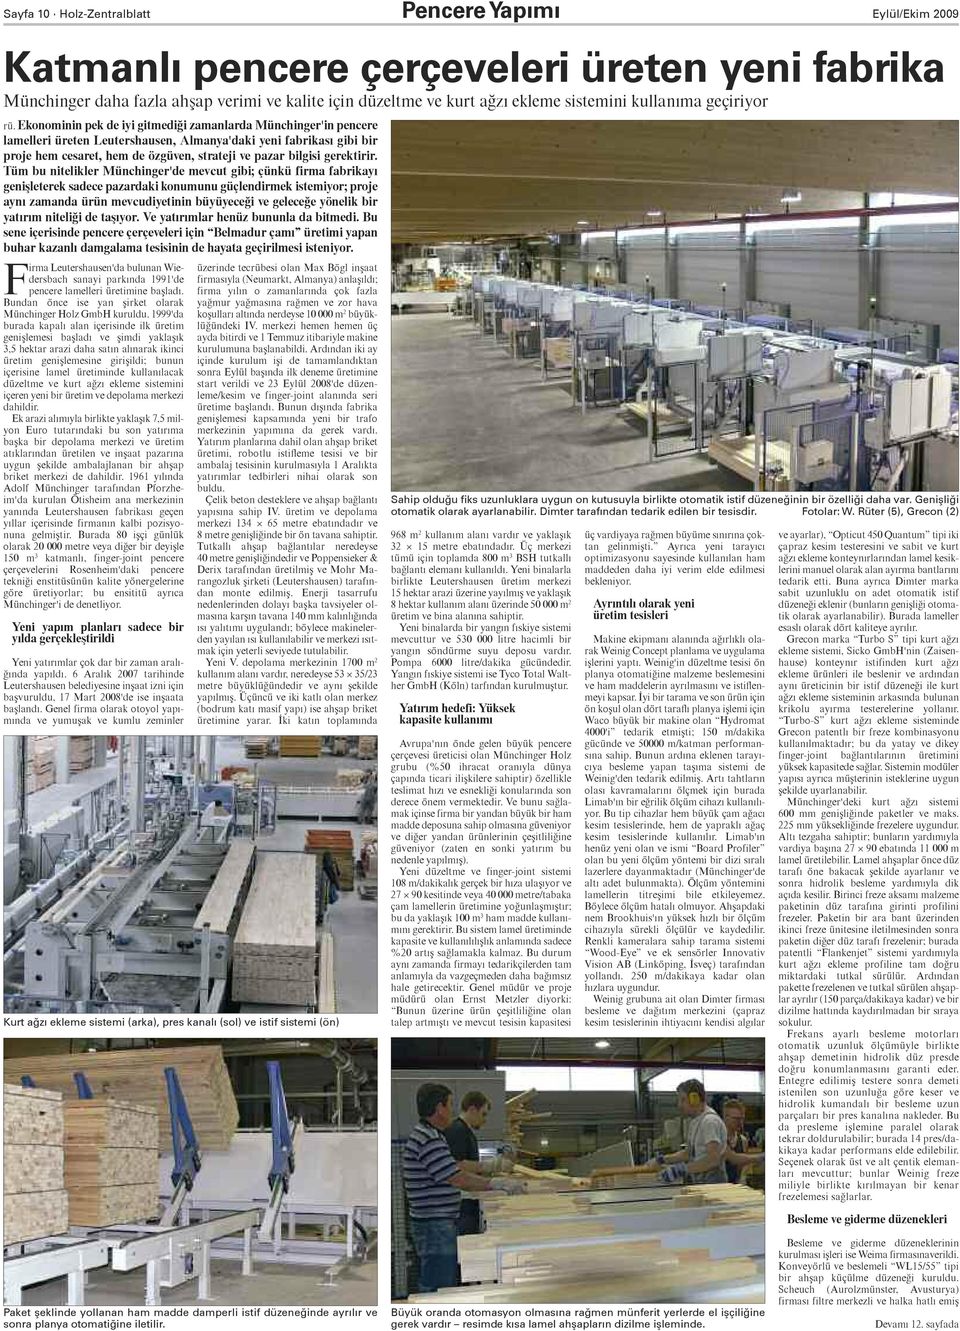 Ekonominin pek de iyi gitmediği zamanlarda Münchinger'in pencere lamelleri üreten Leutershausen, Almanya'daki yeni fabrikası gibi bir proje hem cesaret, hem de özgüven, strateji ve pazar bilgisi